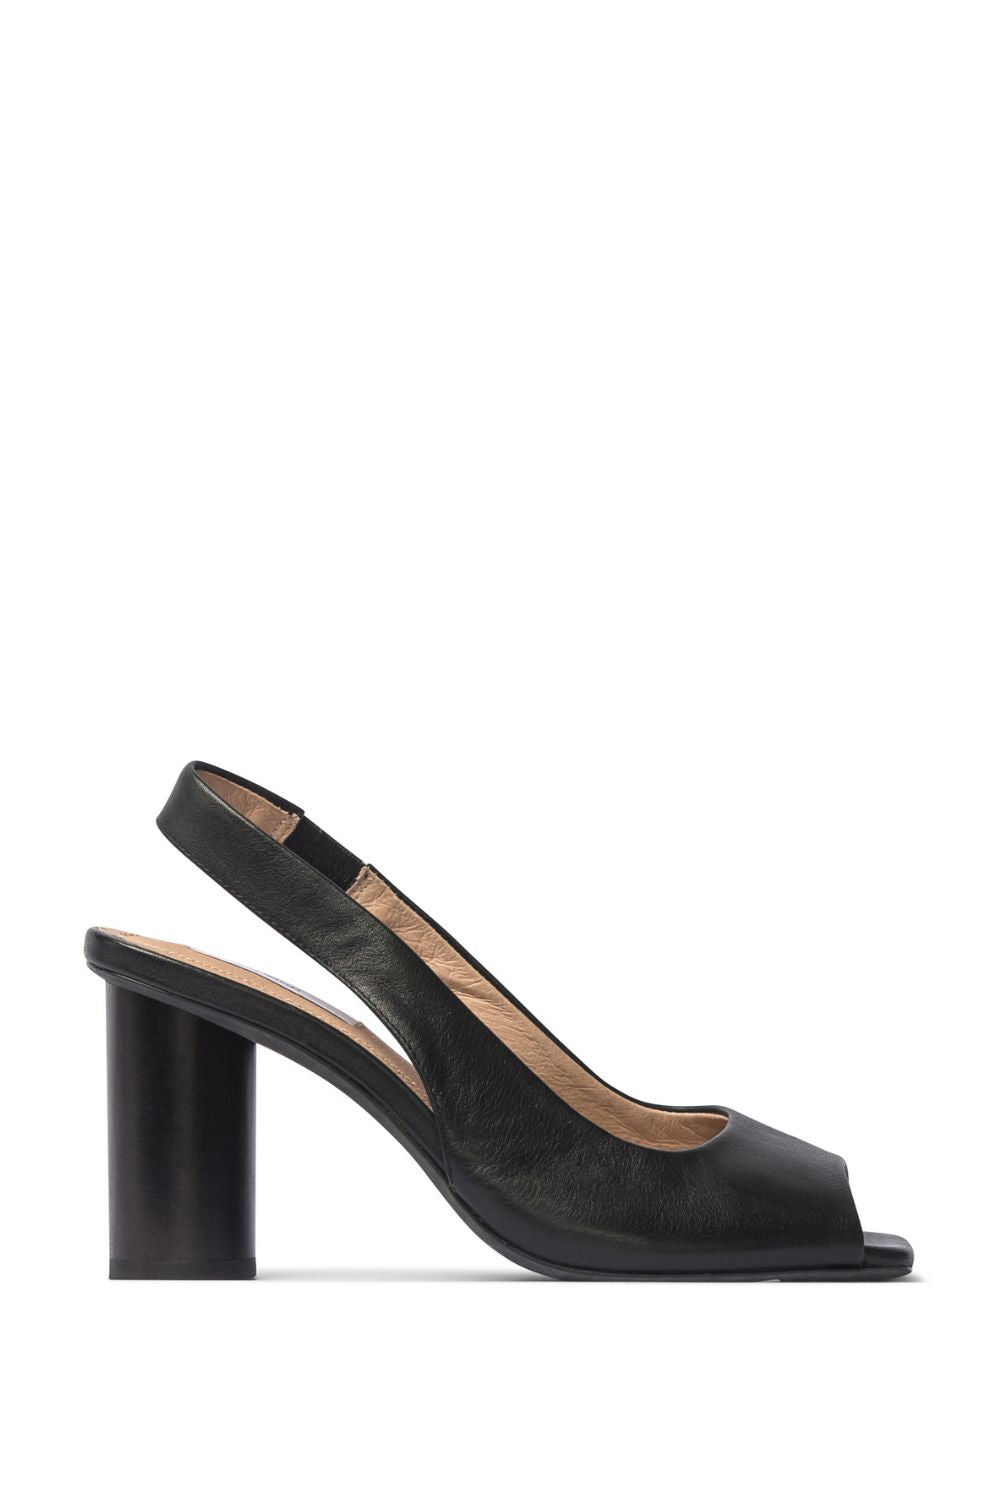 black, heel, squared toe shape, slingback strap, wooden heel, product side image